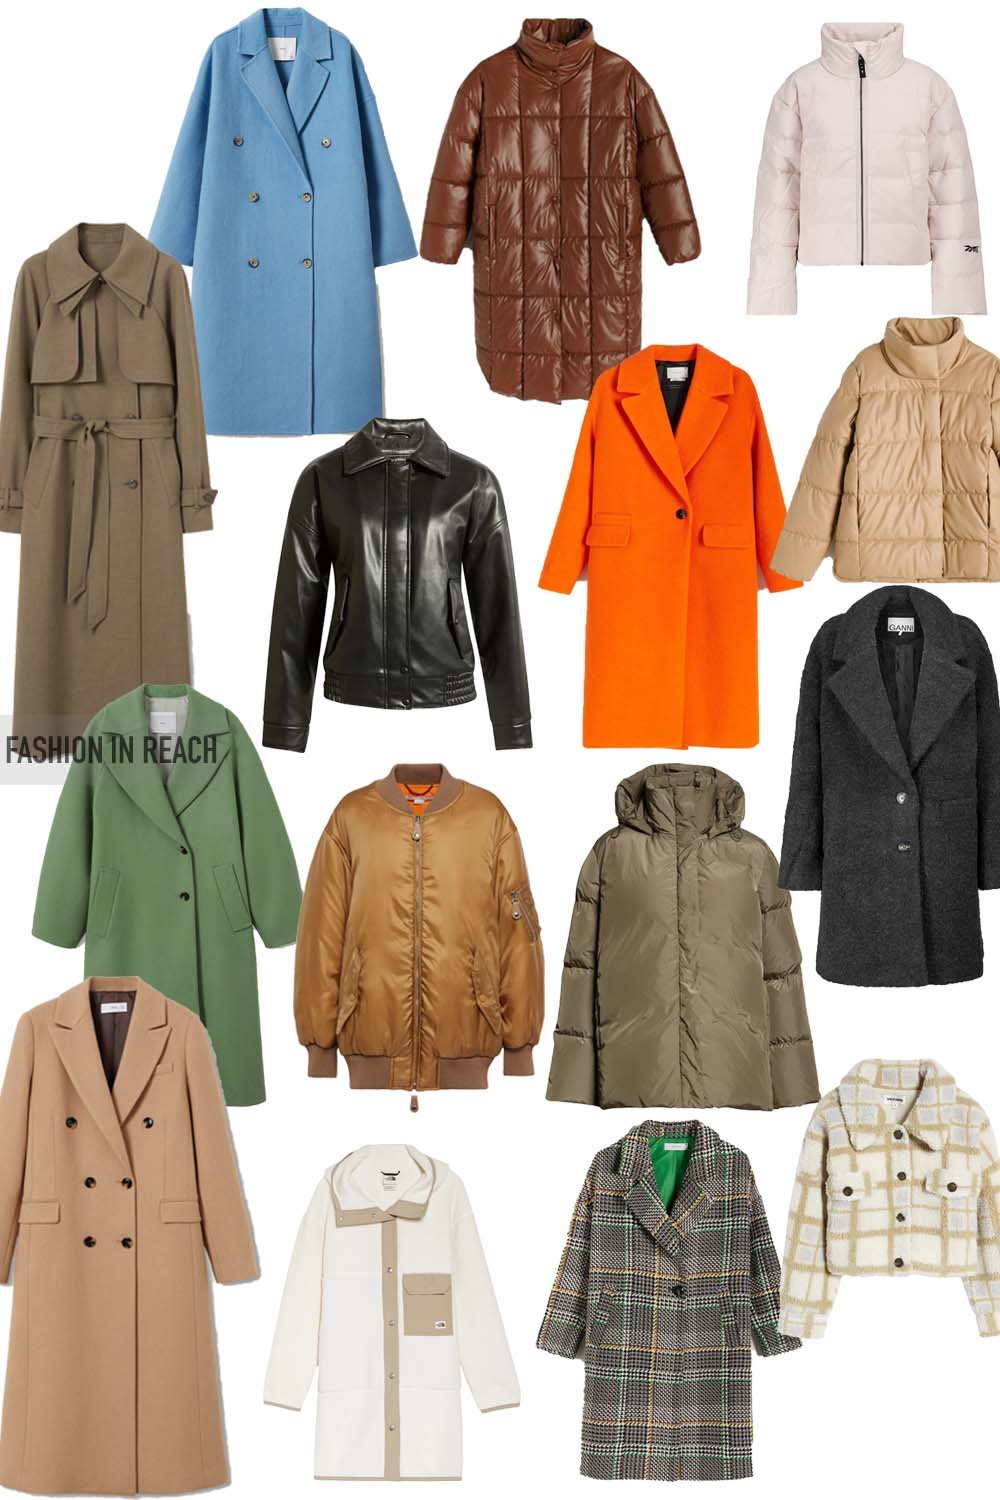 Coats and Jackets